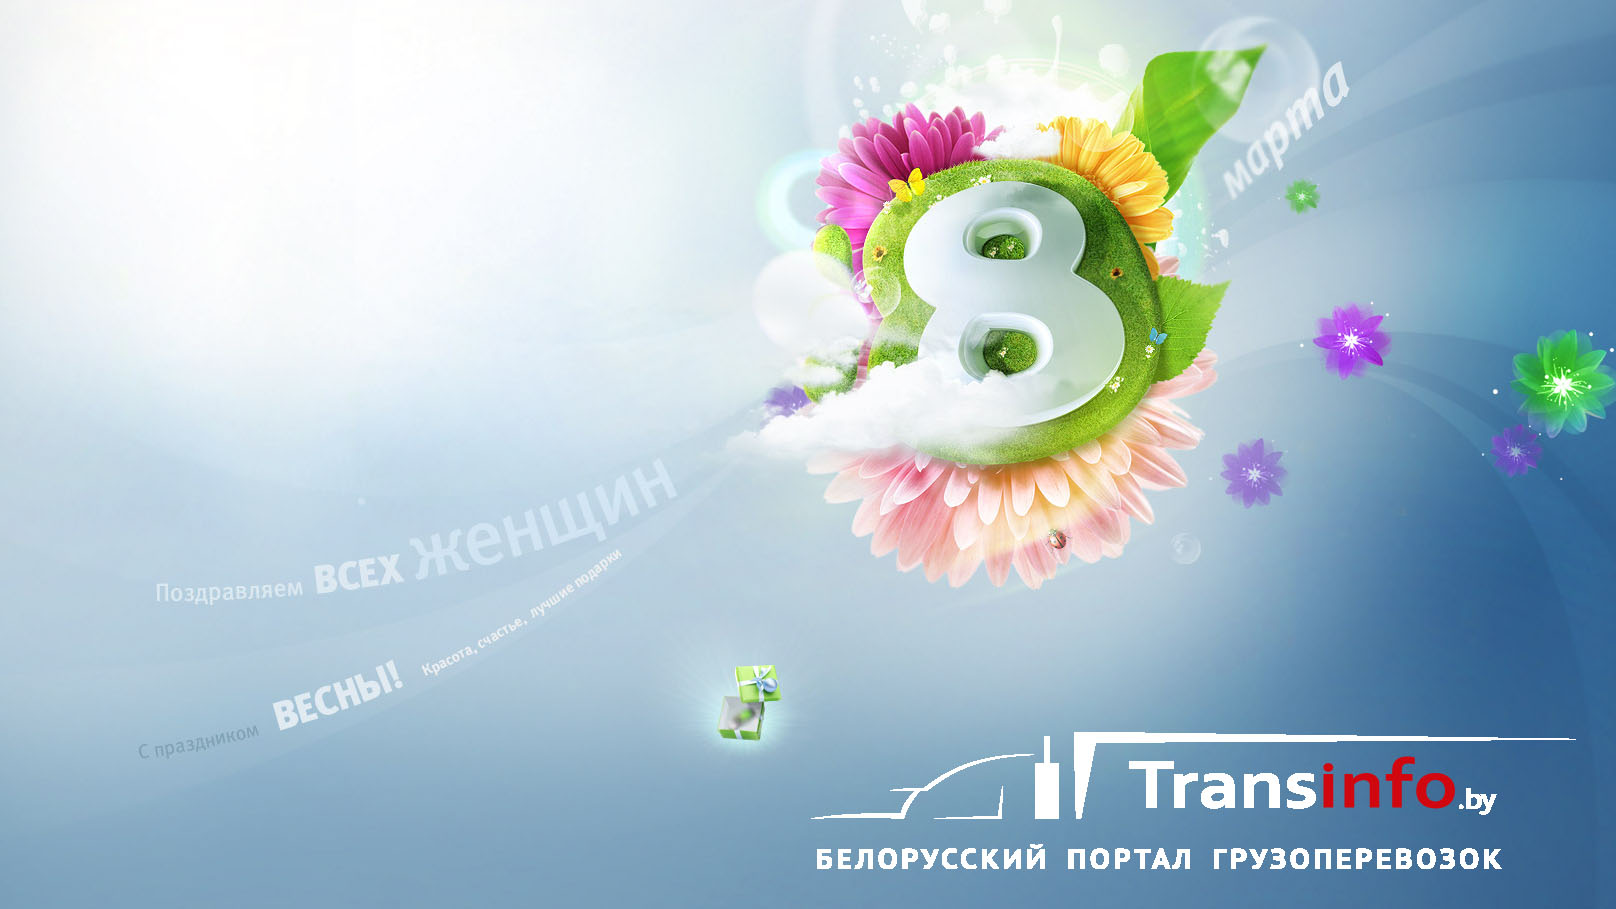 Transinfo поздравляет всех женщин с 8 марта!